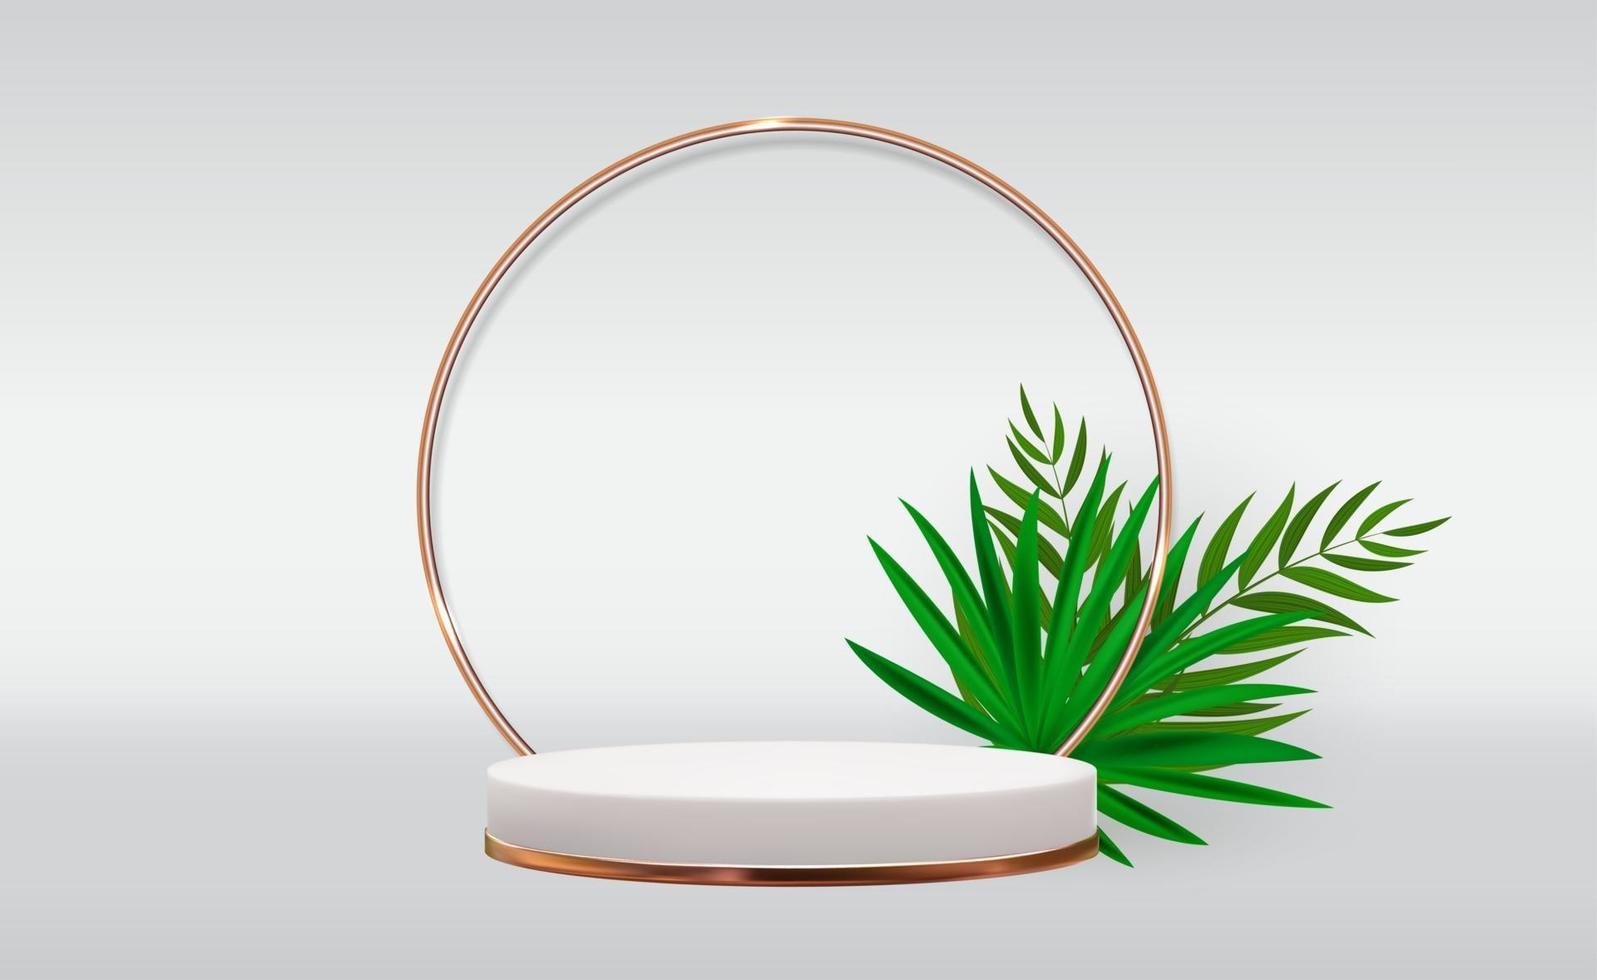 Fondo de pedestal 3d blanco con marco de anillo de vidrio dorado y hojas de palma realistas para la presentación de productos cosméticos revista de moda vector